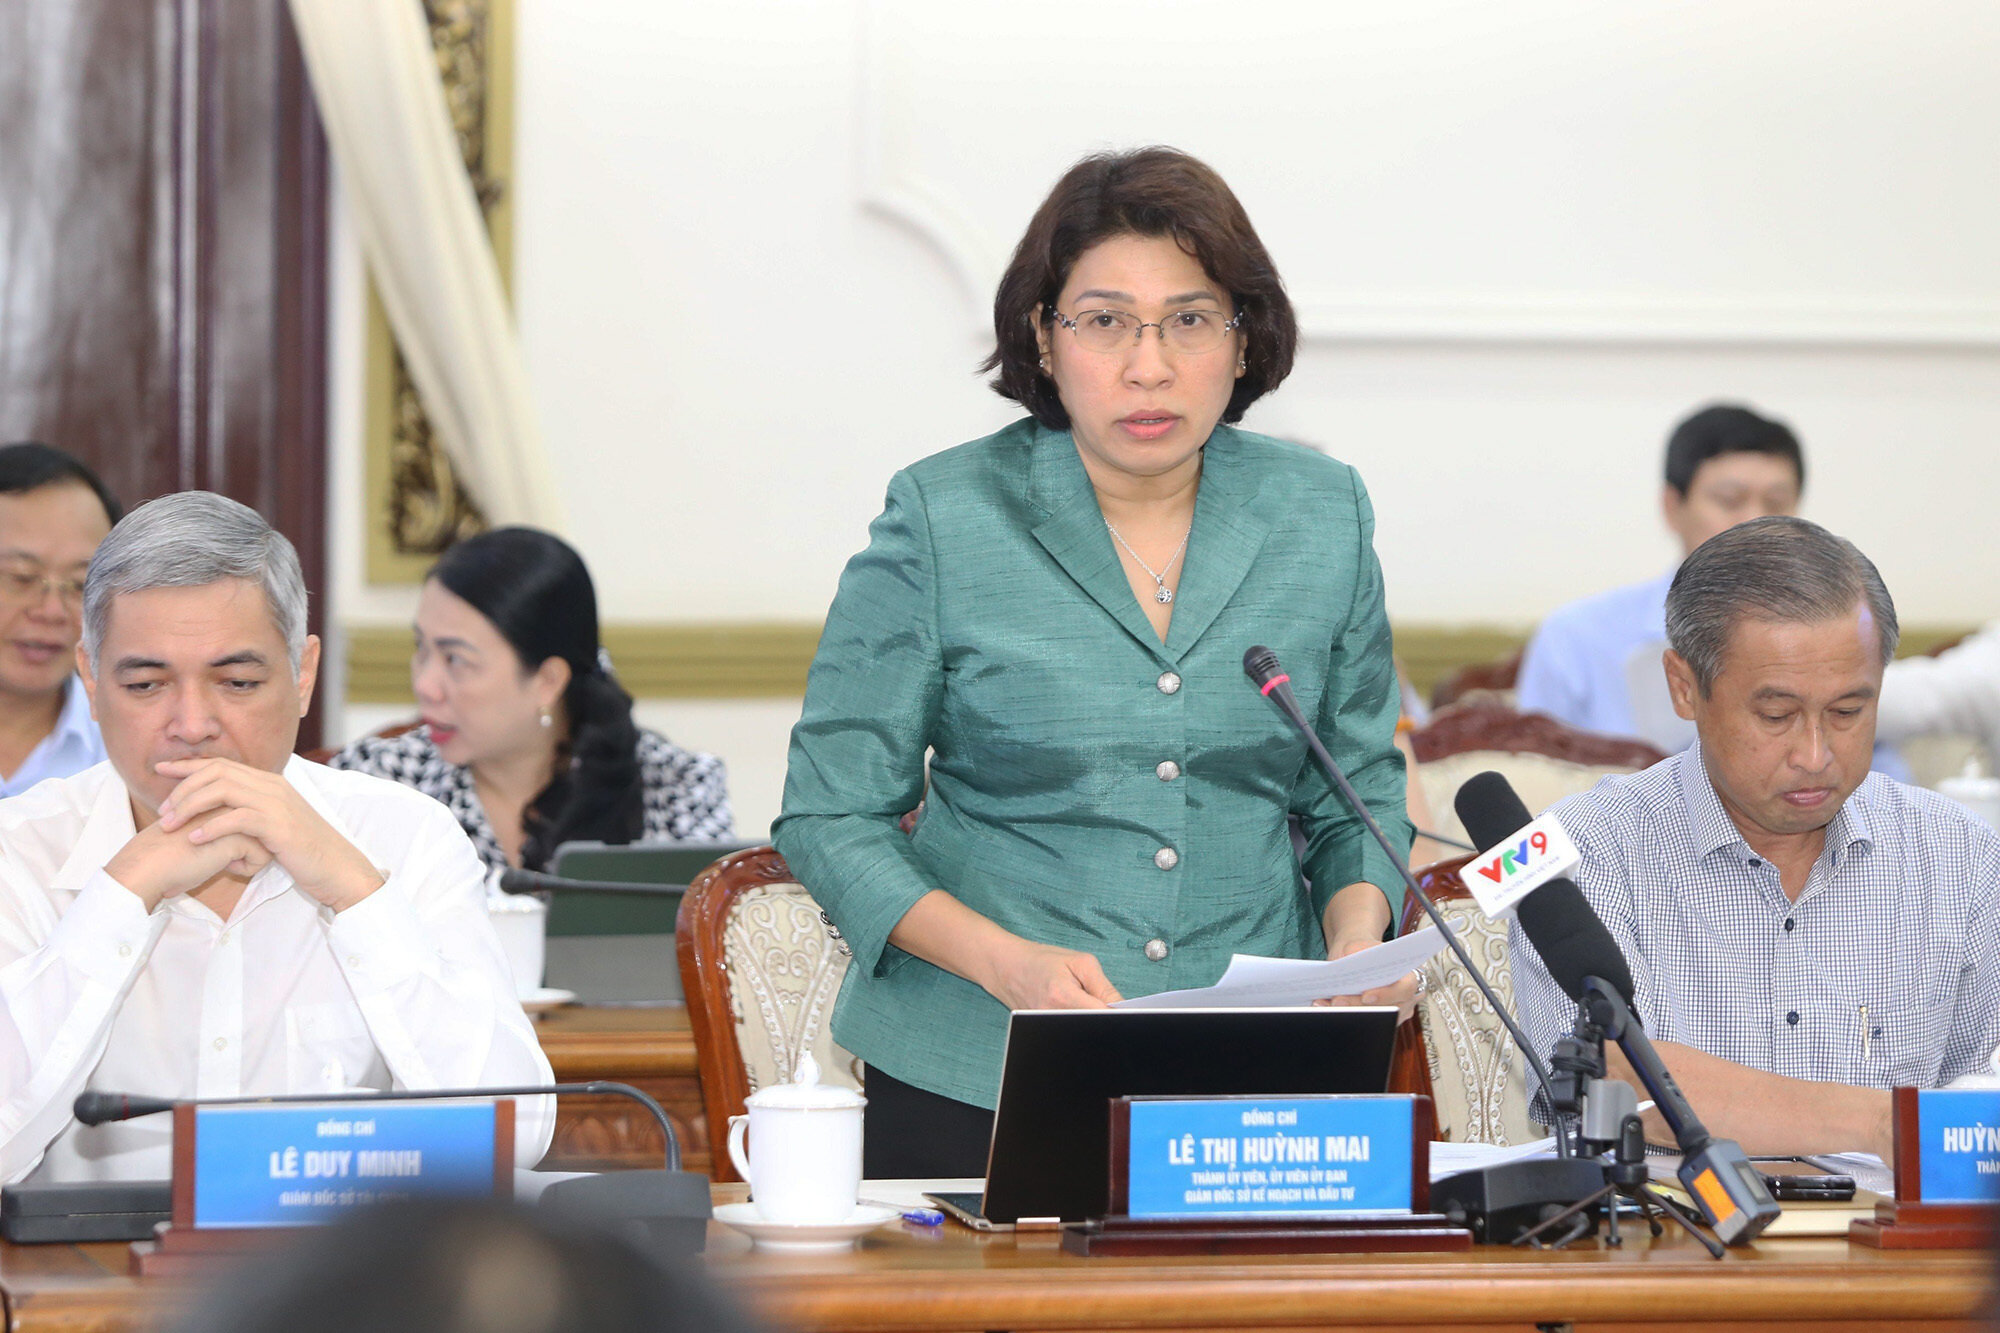 Bà Lê Thị Huỳnh Mai, Giám đốc Sở Kế hoạch và Đầu tư TP.HCM.